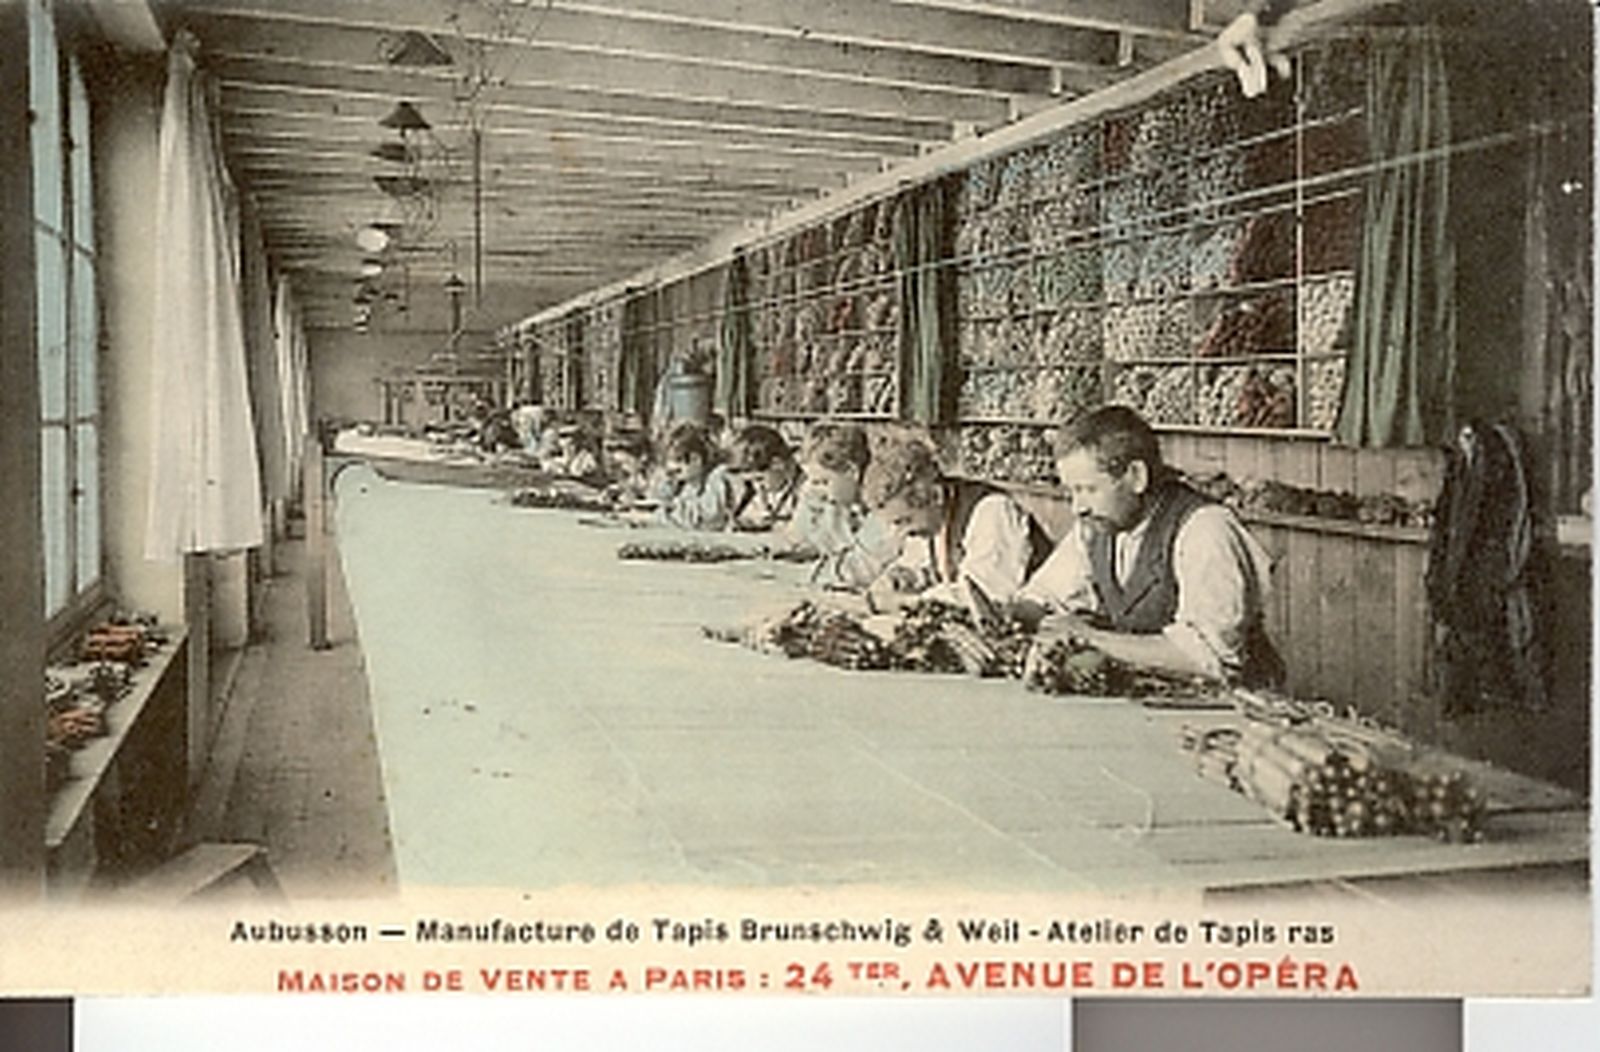 Carte postale (1er quart 20e siècle) de la manufacture Brunschwig et Weil : un atelier de tapis ras (collection particulière).